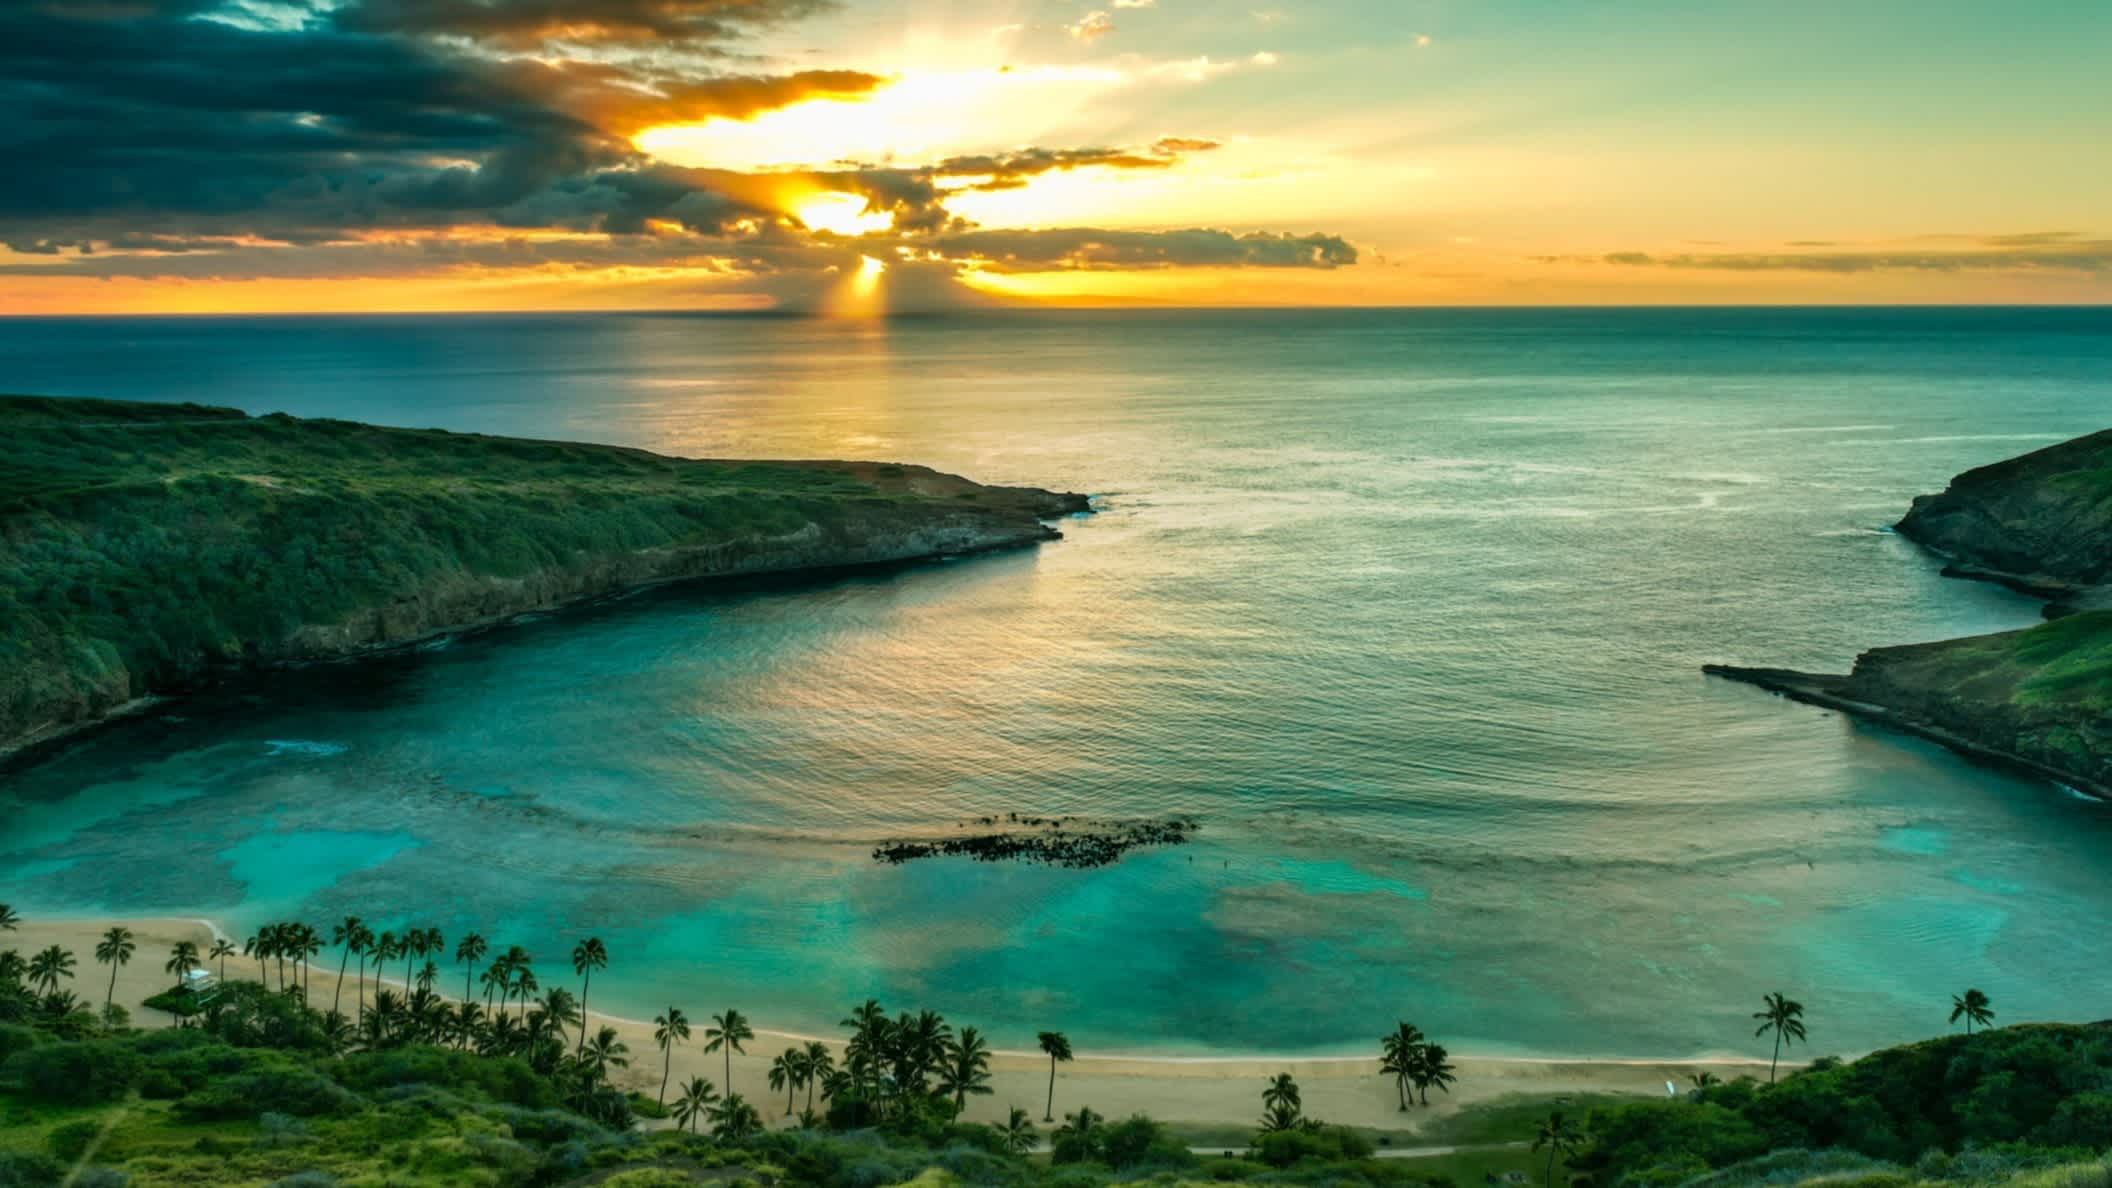 Der Strand Hanauma Bay, Oahu, Hawaii, USA bei Sonnendämmerung und mit Blick auf das Meer und die weite Bucht aus der Luft.